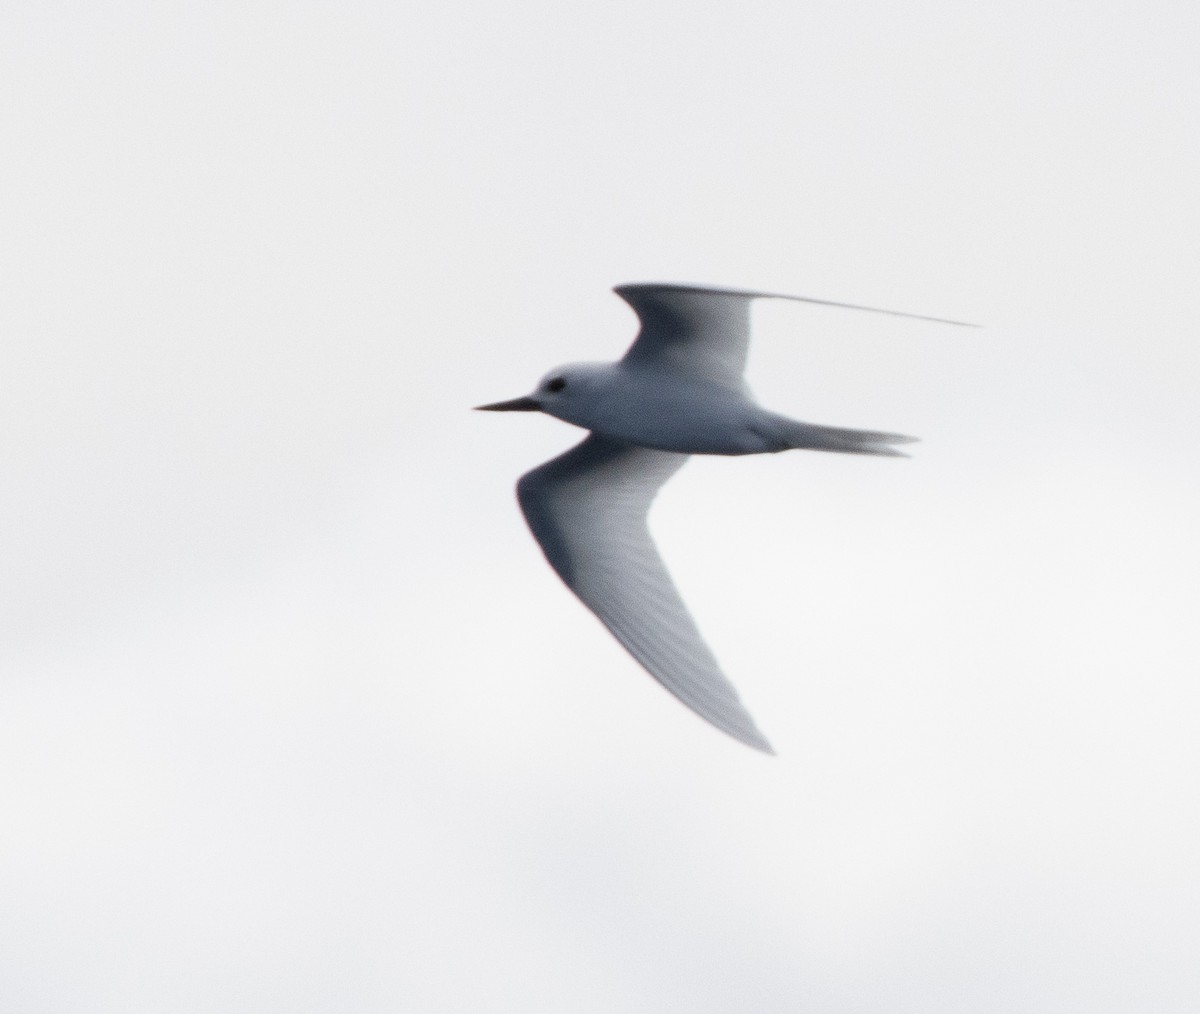 White Tern - Luke sbeghen